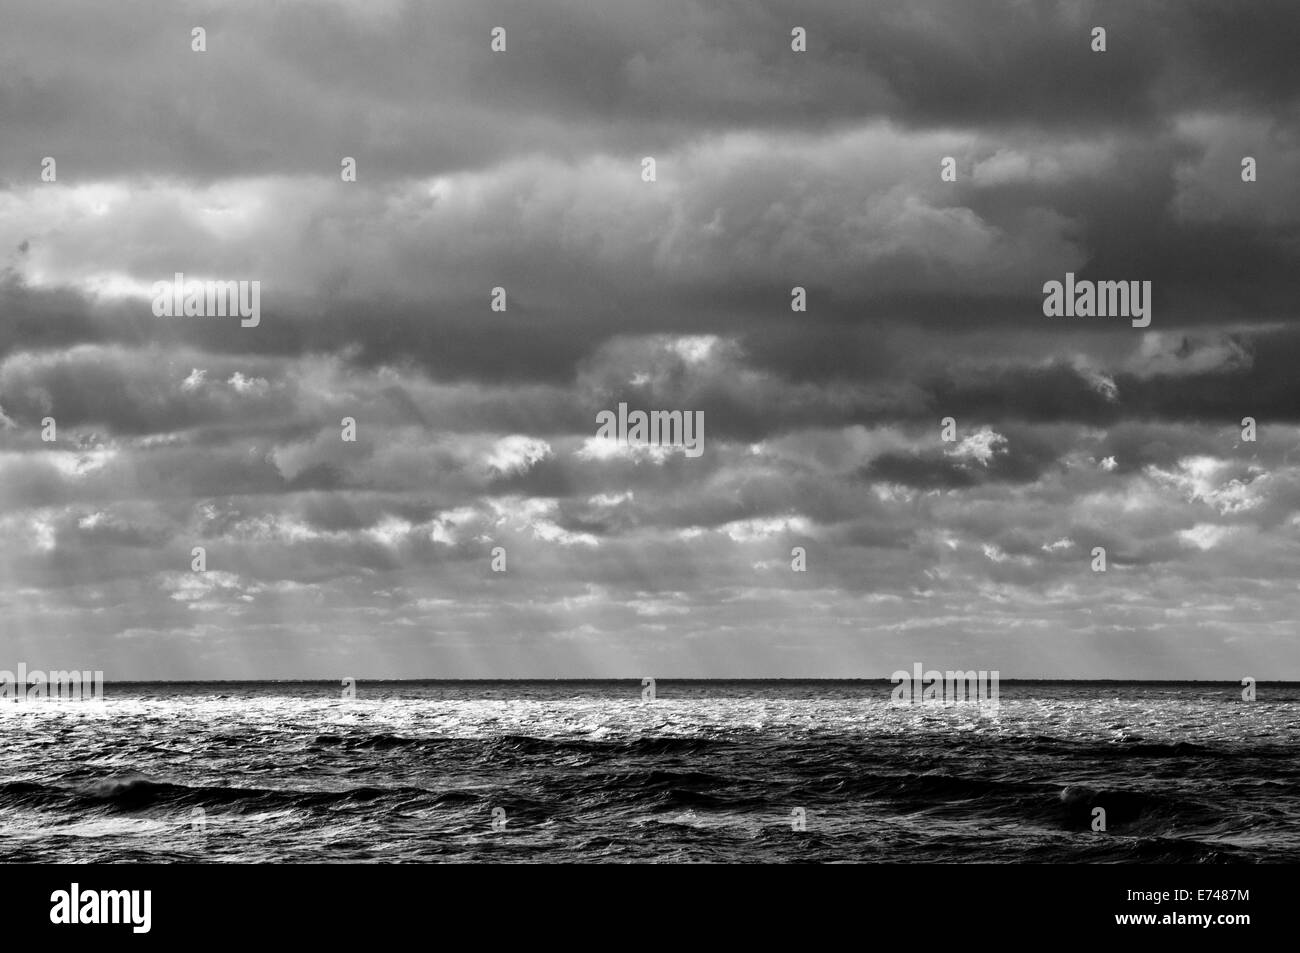 Ein schwarz-weiß Bild von dämmerungsaktiv Strahlen piercing einen bewölkten Himmel und Teile des Meeres Leuchten Stockfoto